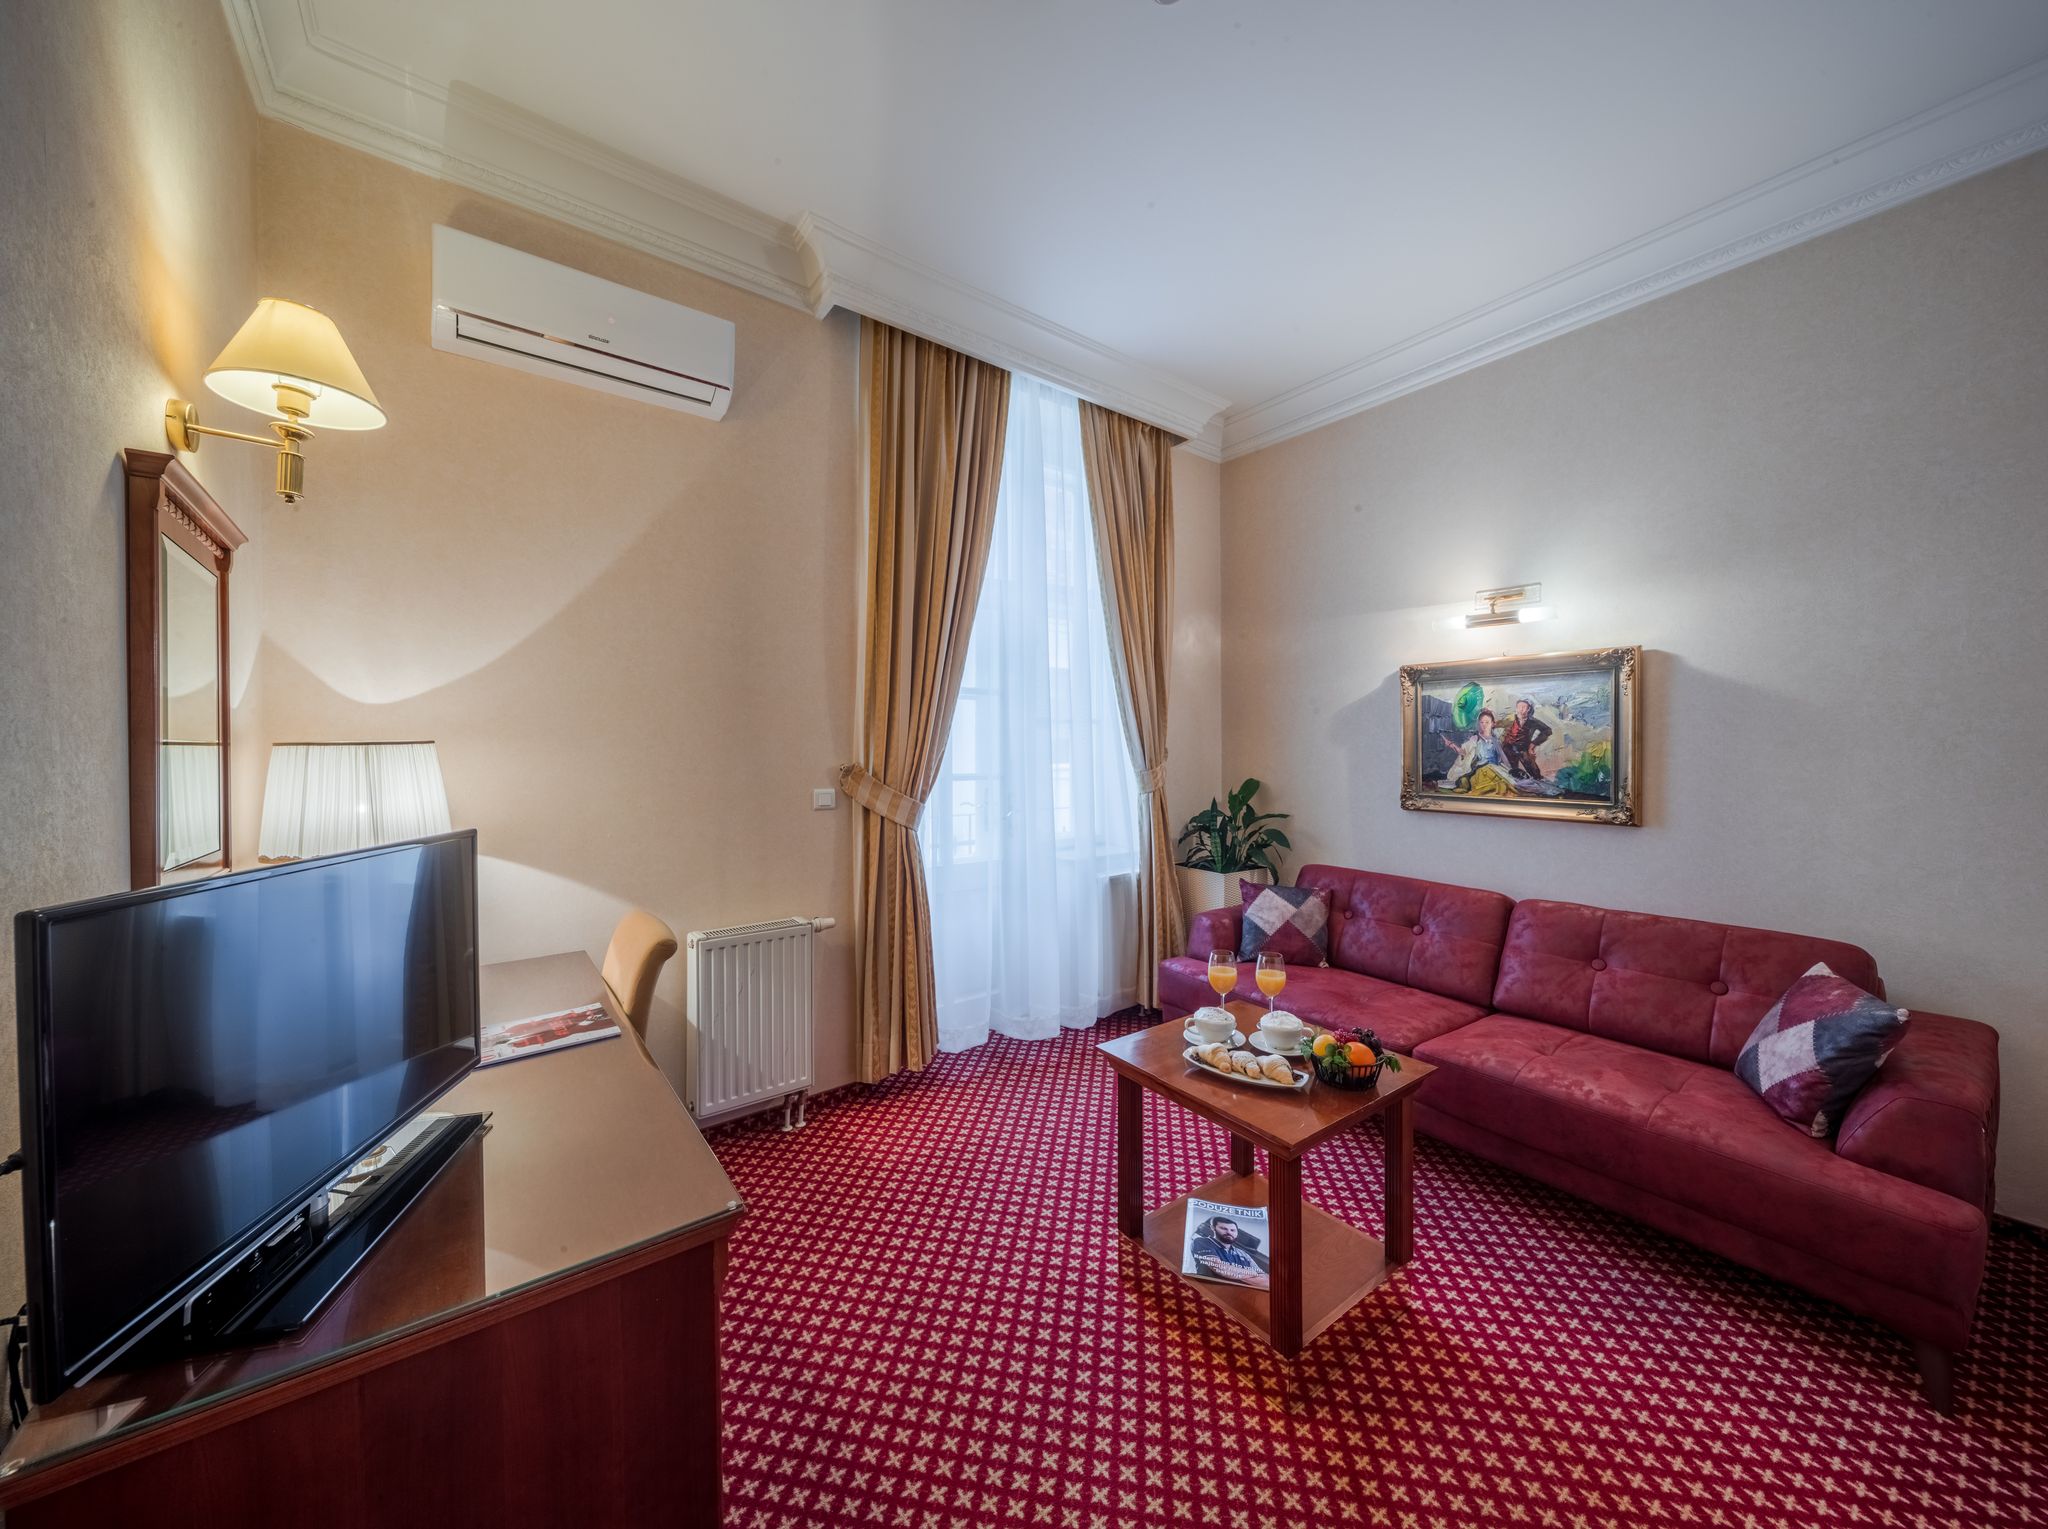 U srcu Osijeka smješten je hotel koji krije bogatu povijest; hotel Waldinger